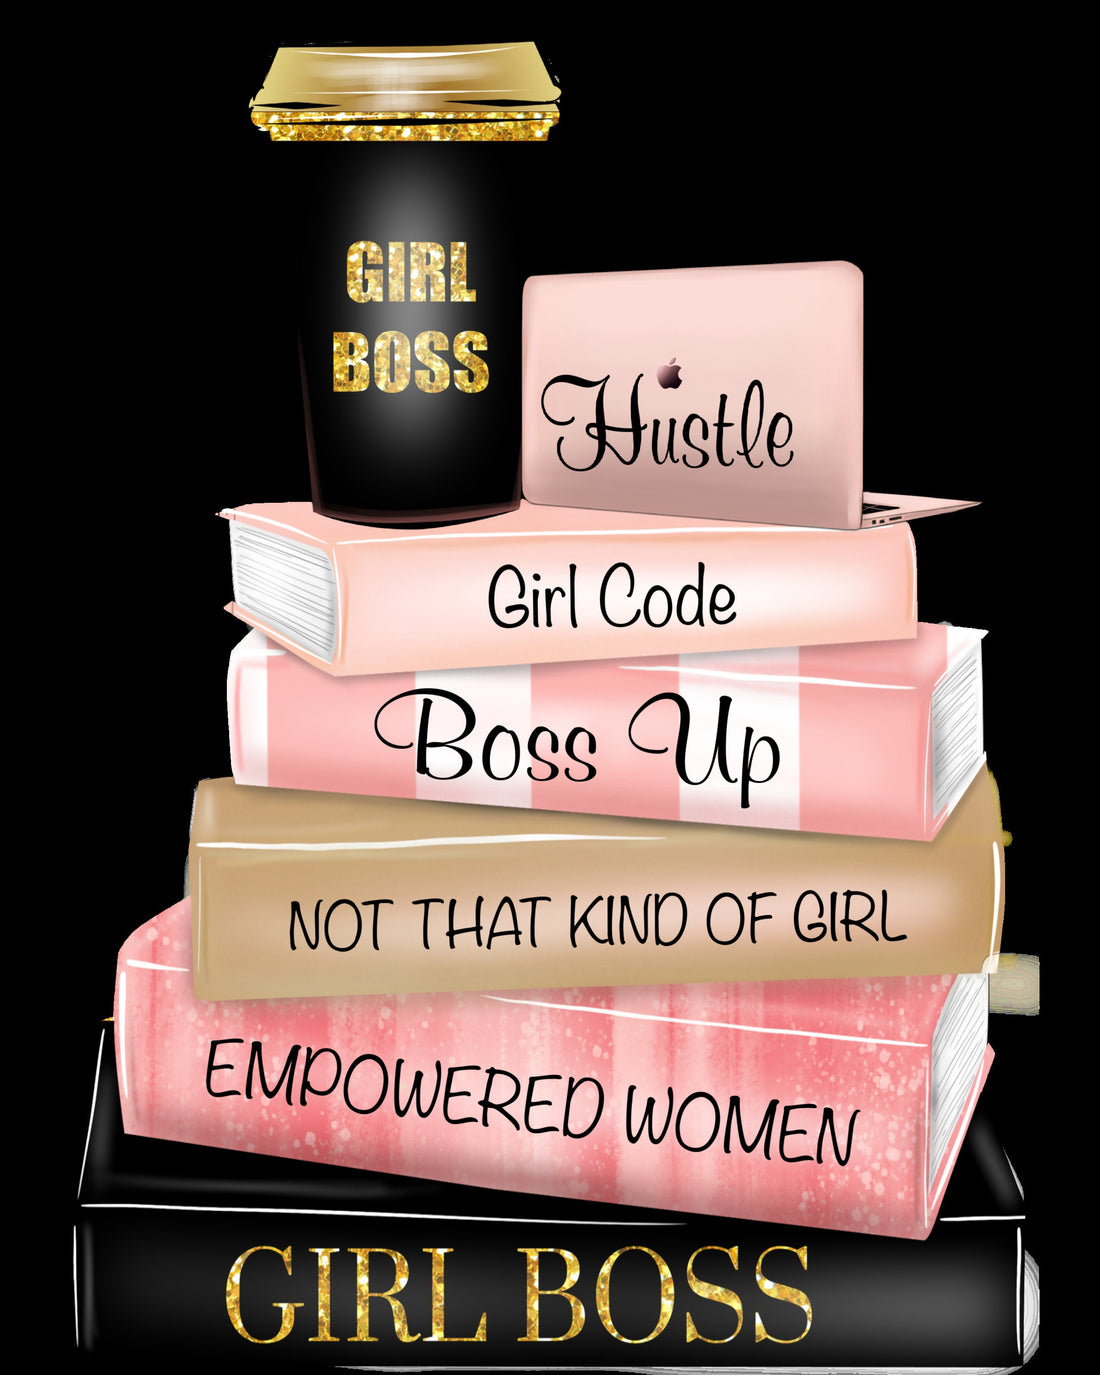 Girl Boss Poster | Girl Boss Wall Art | Hustle Poster Printsfor women | Girl Code, Girl Boss Print